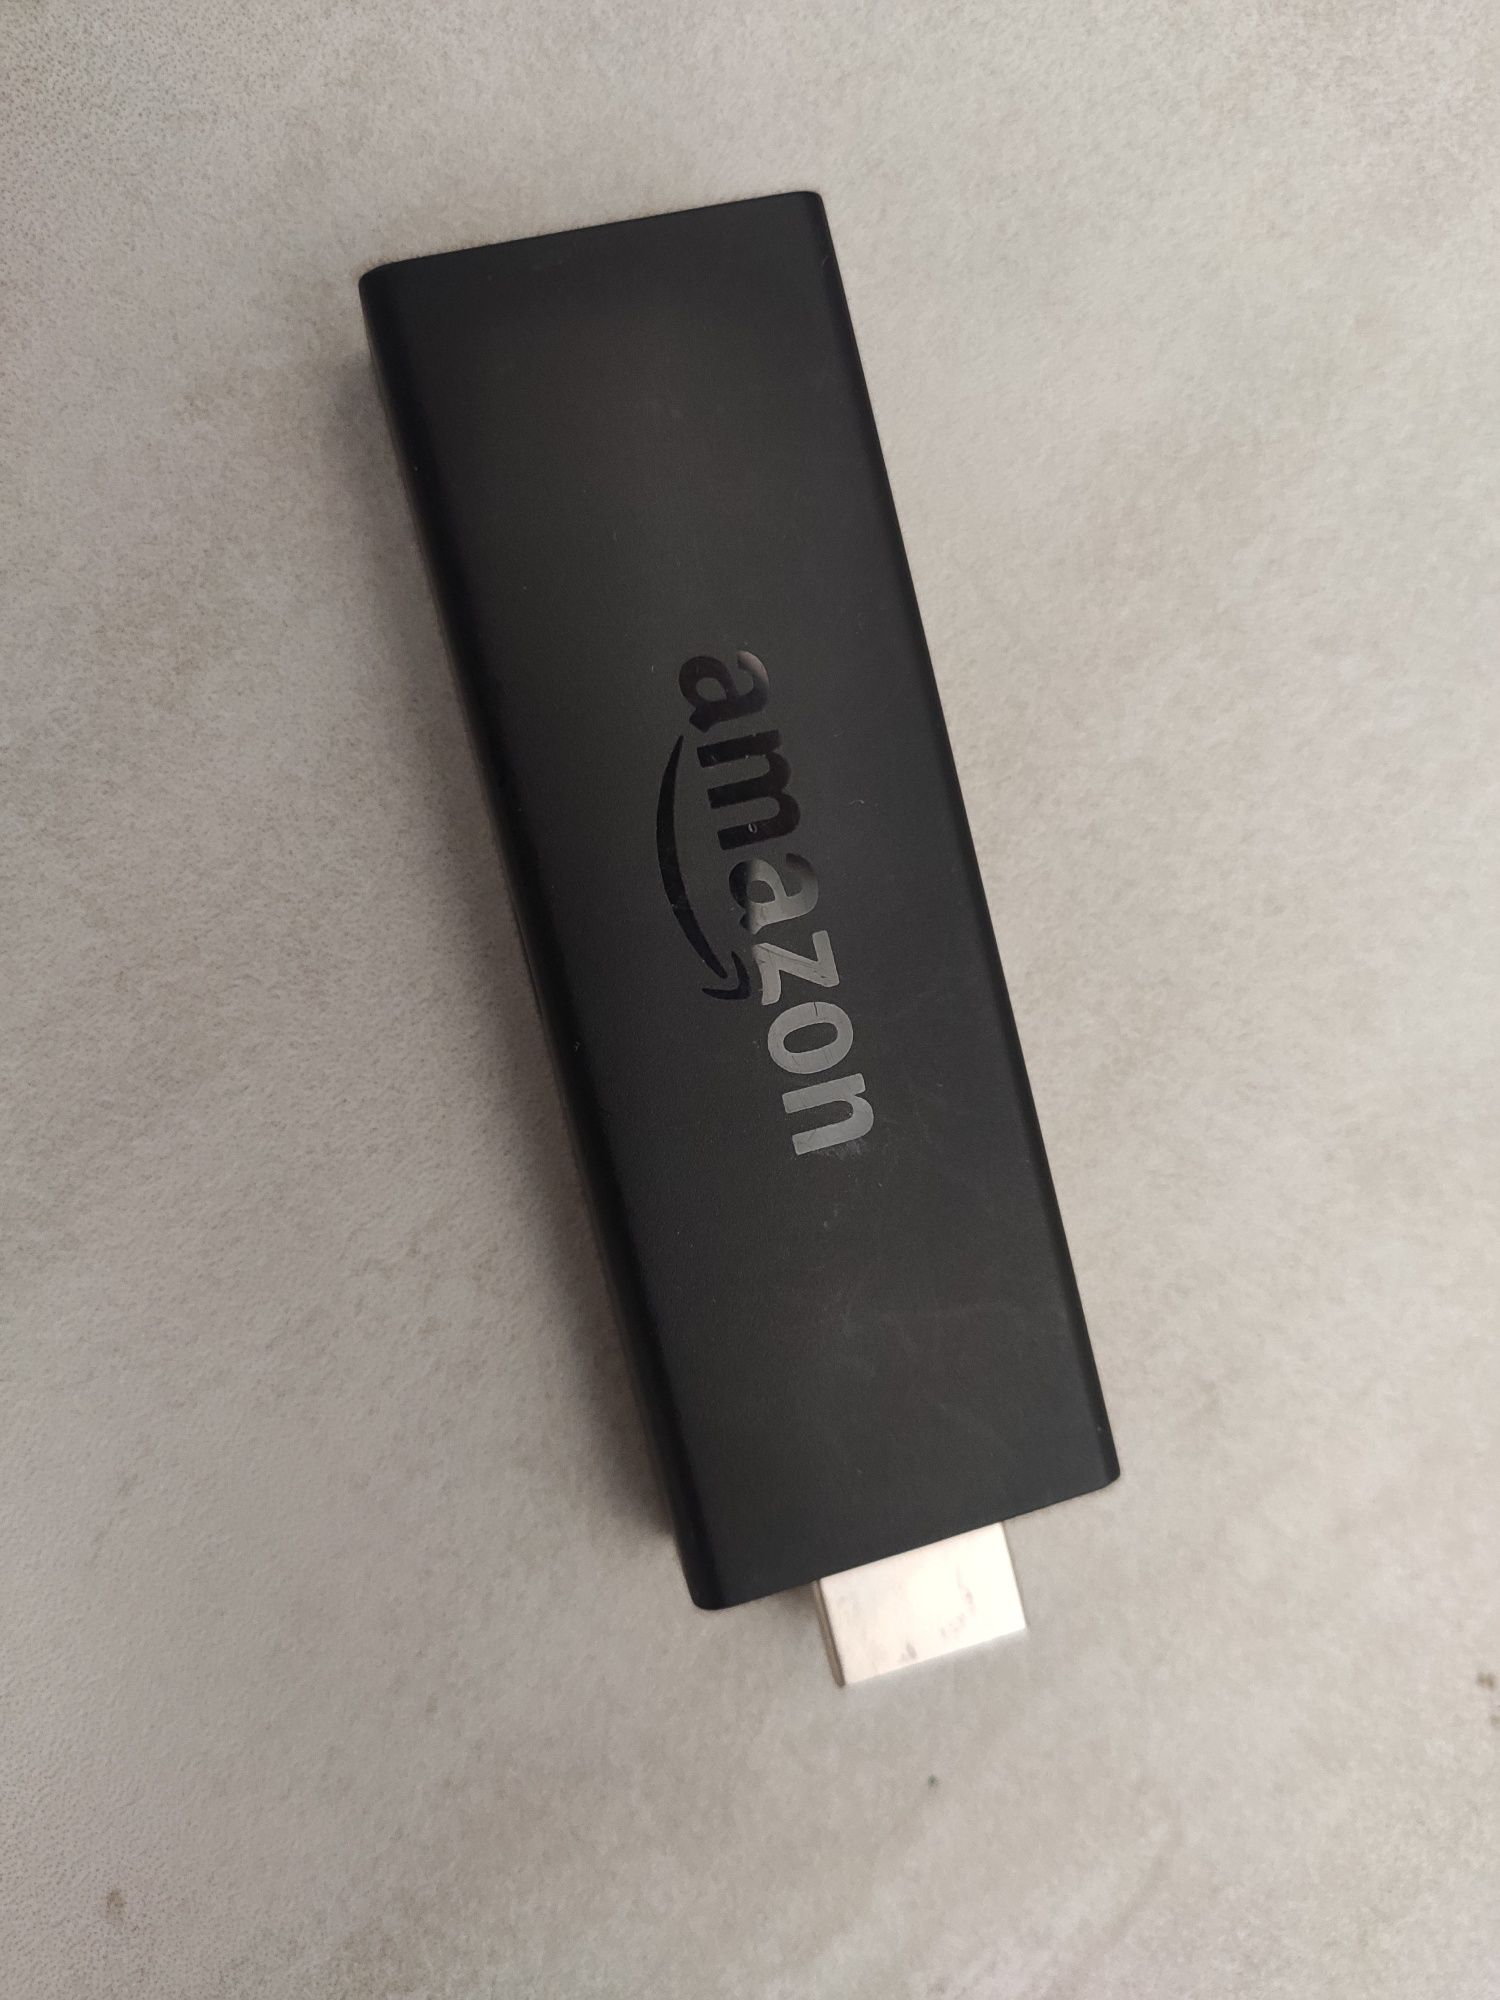 Telecomanda originala Amazon Fire TV Stick + stick bonus